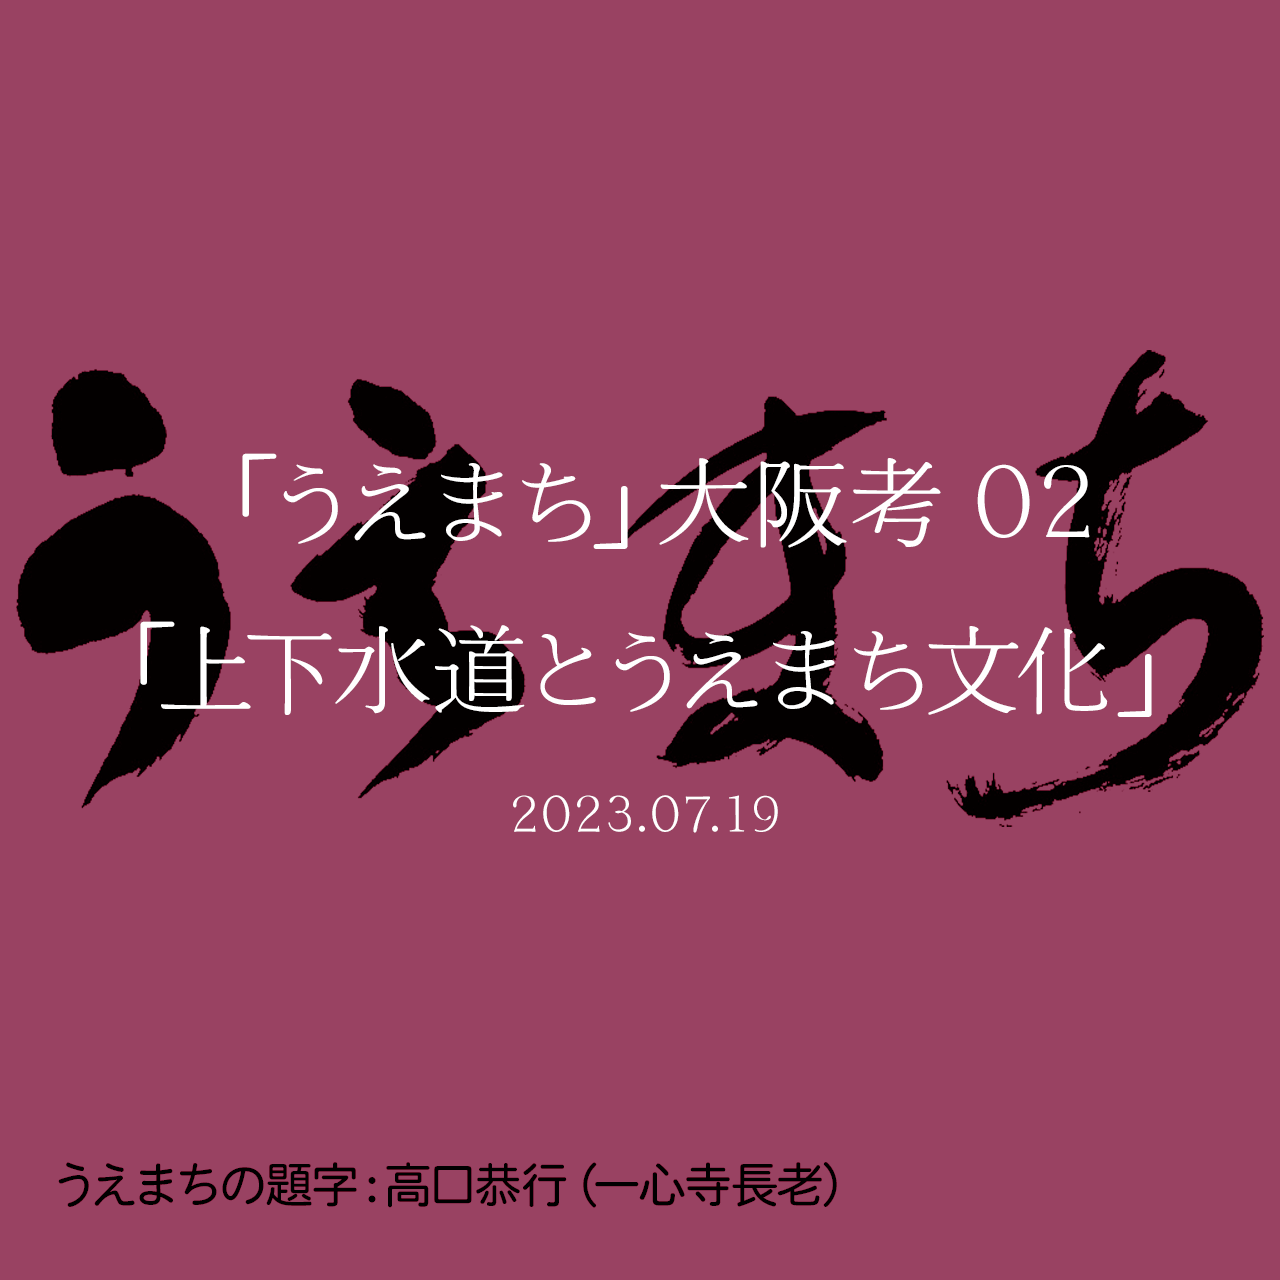 「うえまち」大阪考 02「上下水道とうえまち文化」